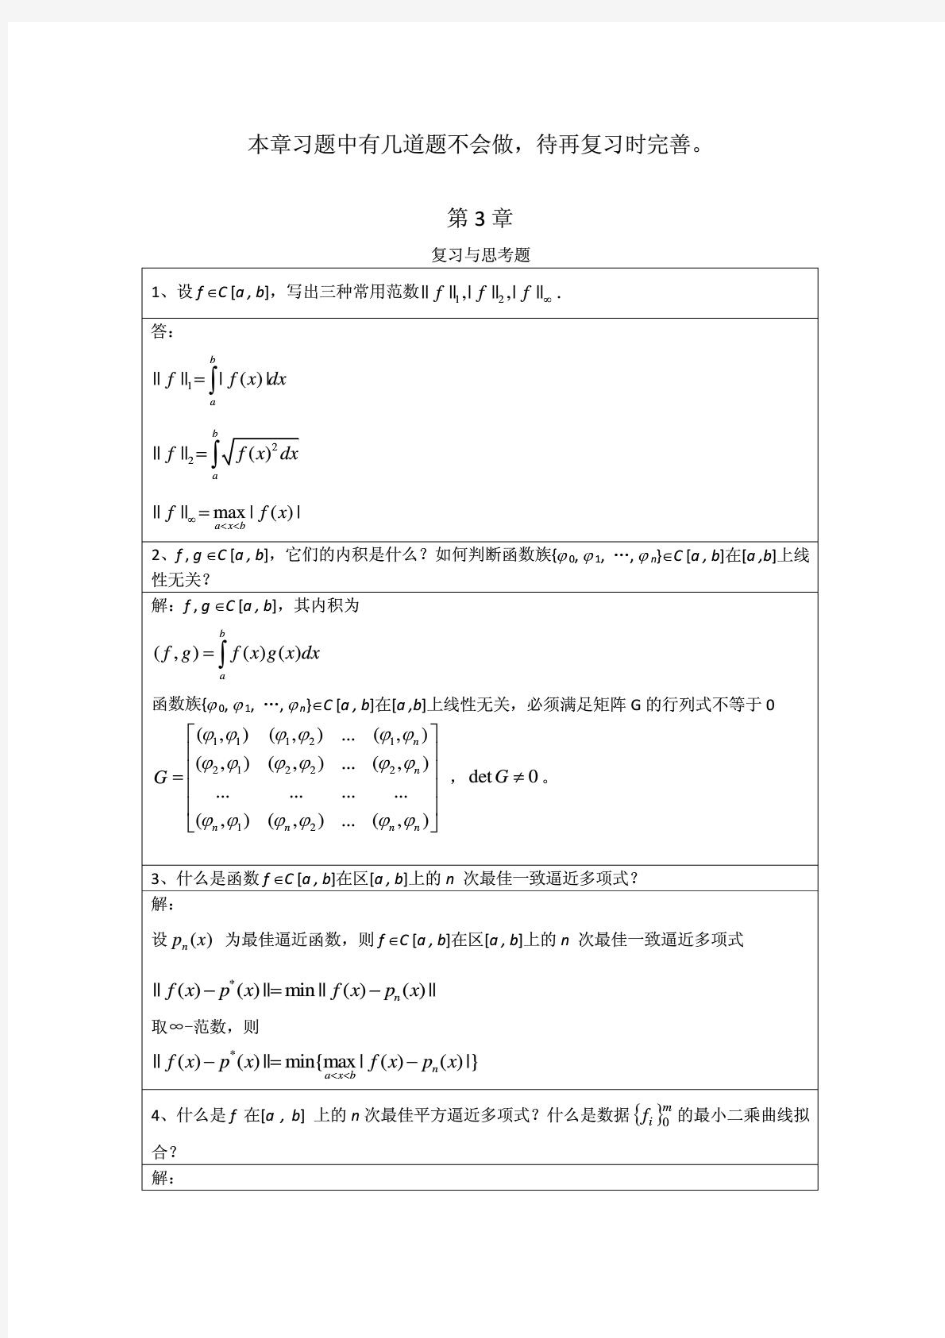 李庆扬-数值分析第五版第3章习题答案(20130702)